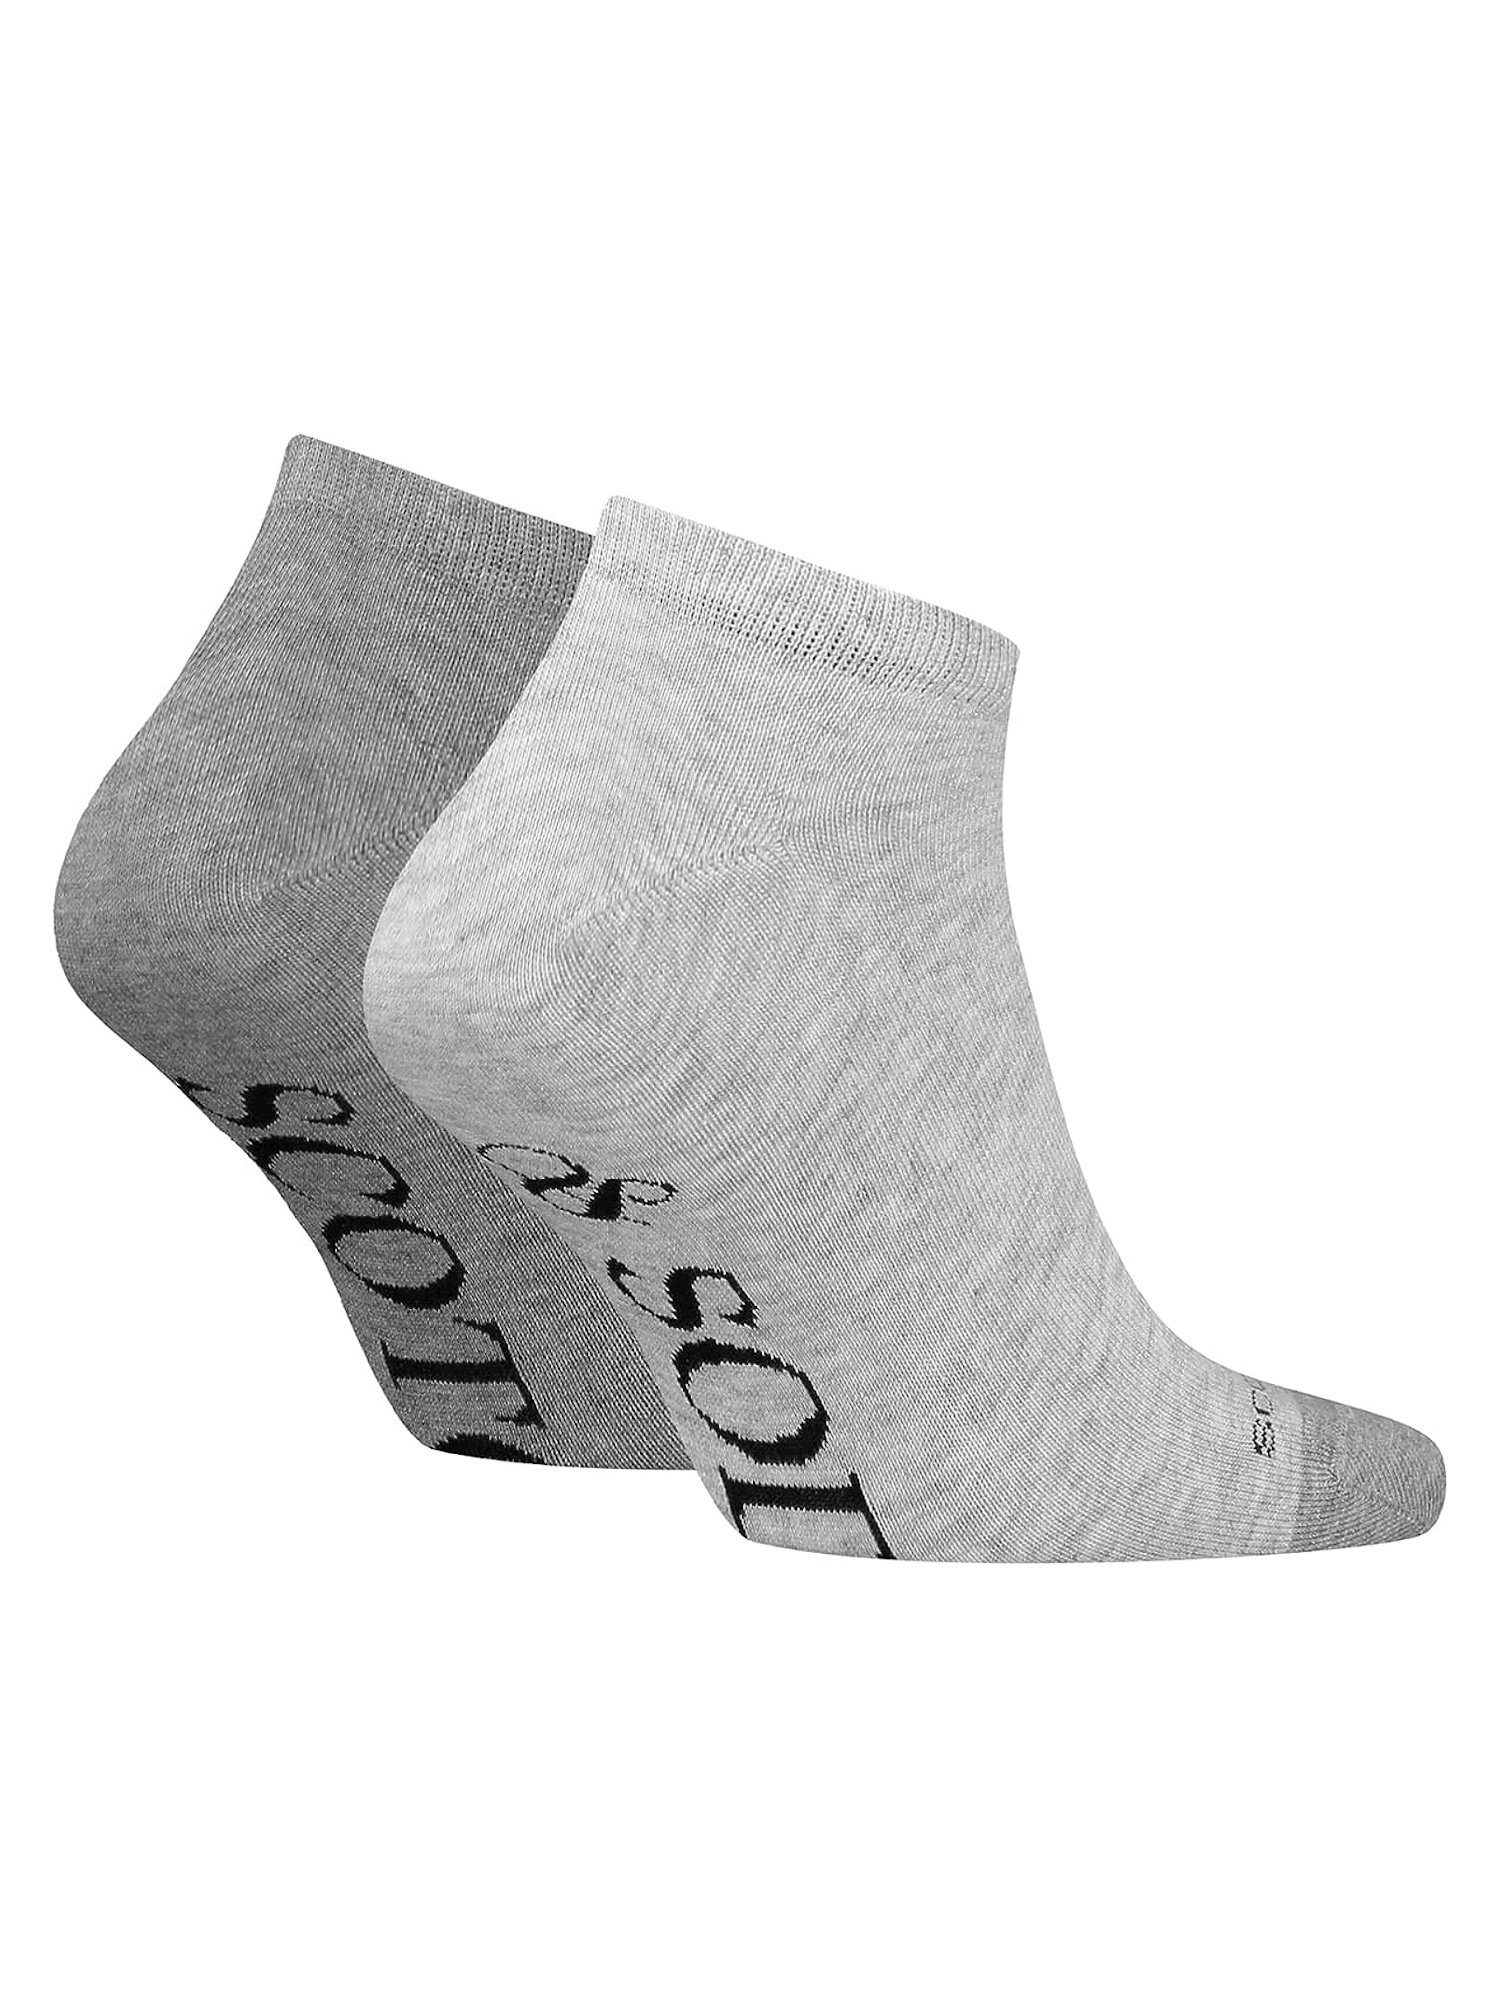 Dip Soda & Socken grau Doppelpack Scotch Socken Toe (2-Paar) Socks Sneaker